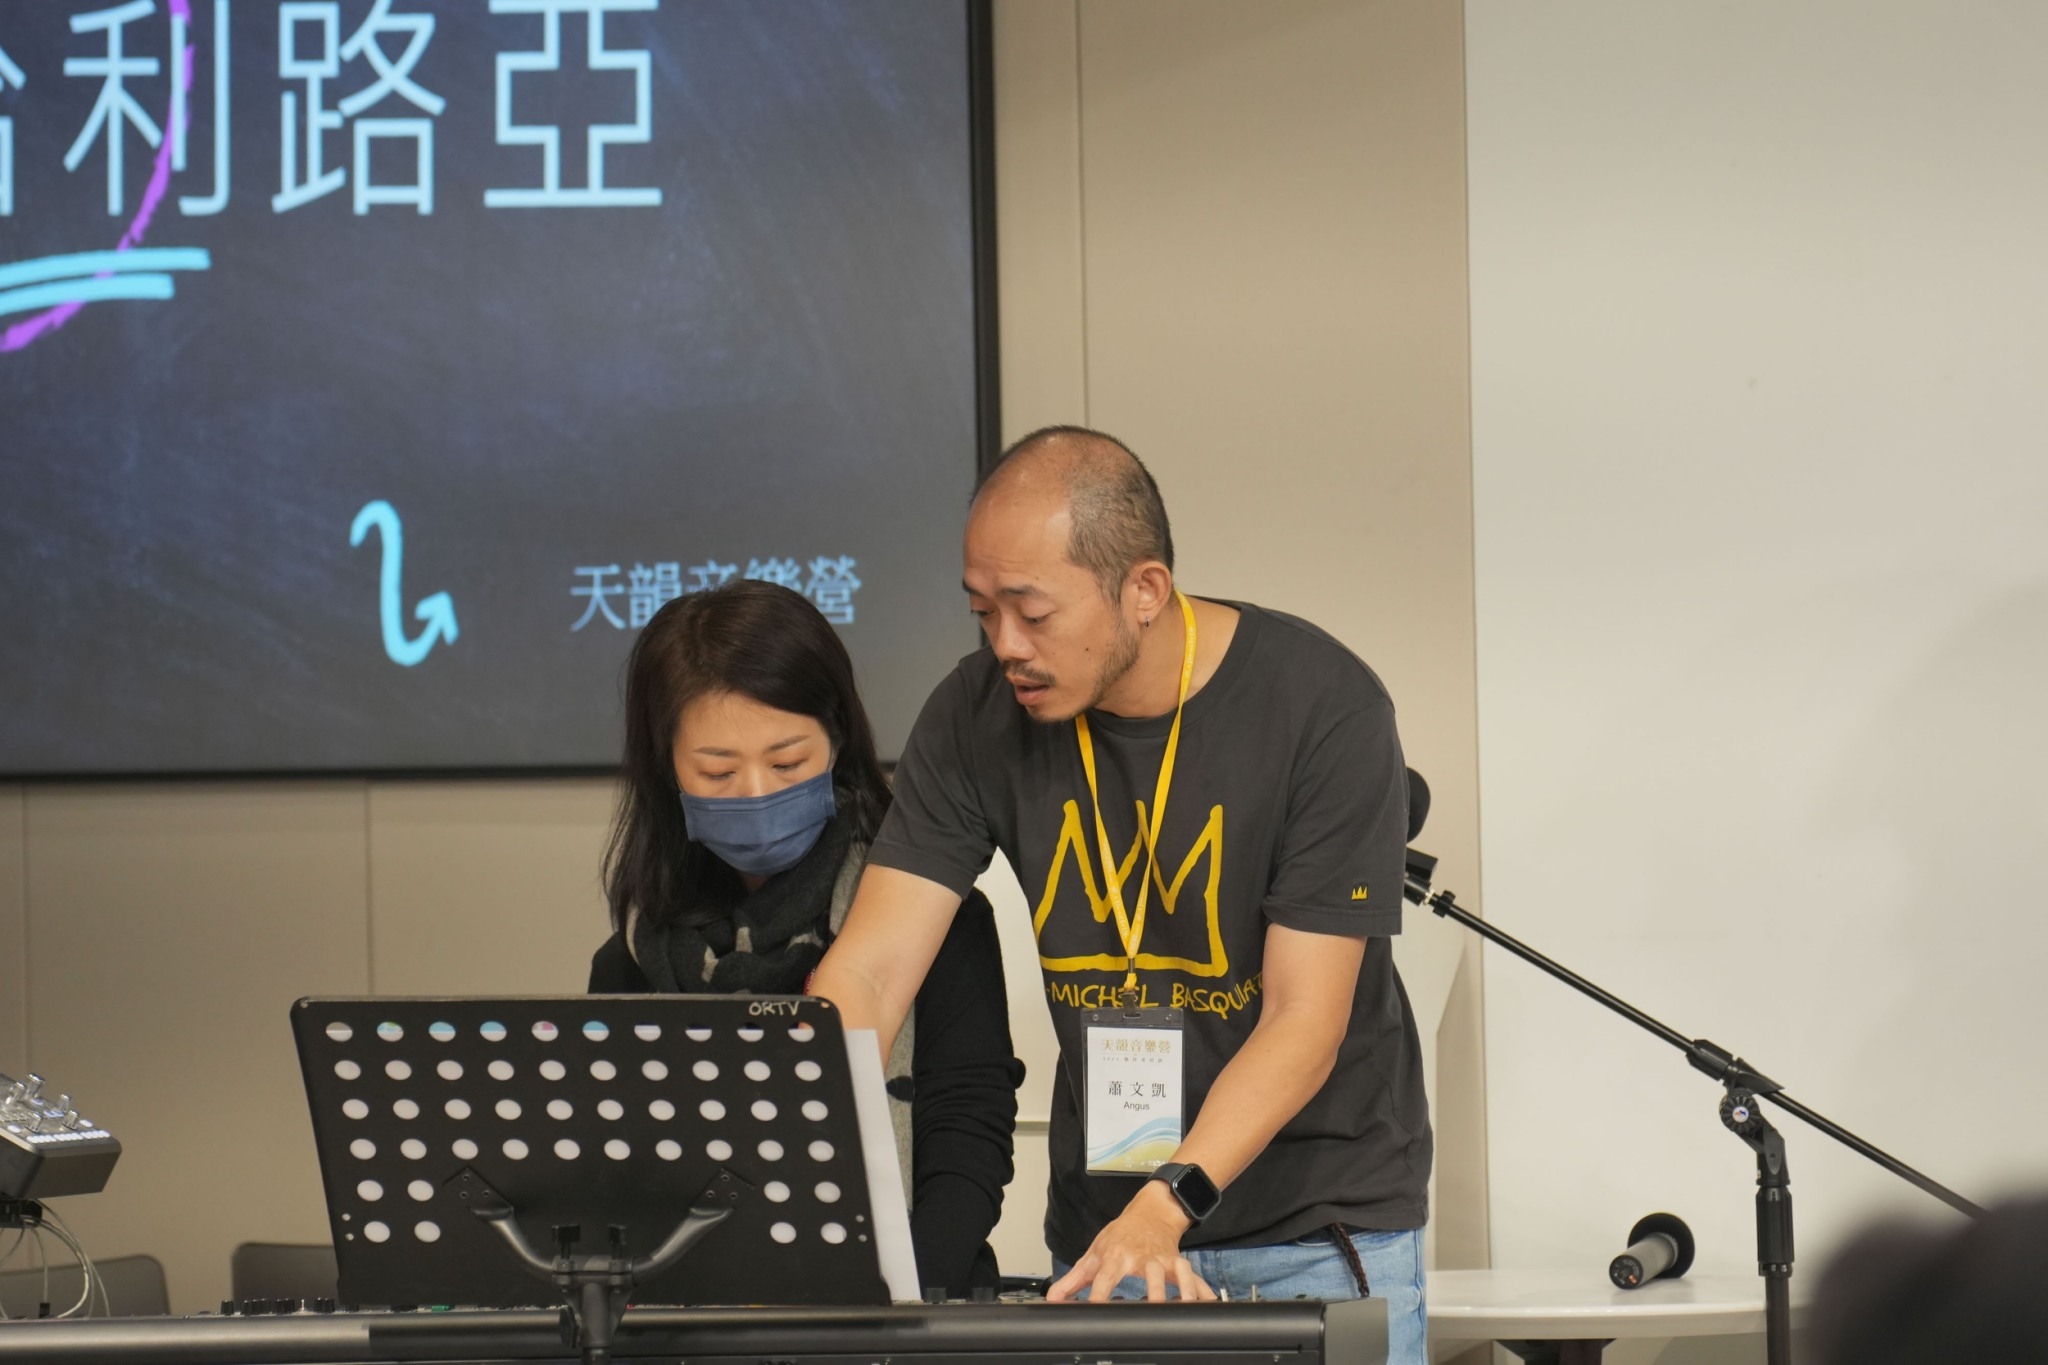 天韻製作人蕭文凱老師(右)現場指導負責Keyboard的學員。(圖/救世傳播協會提供)